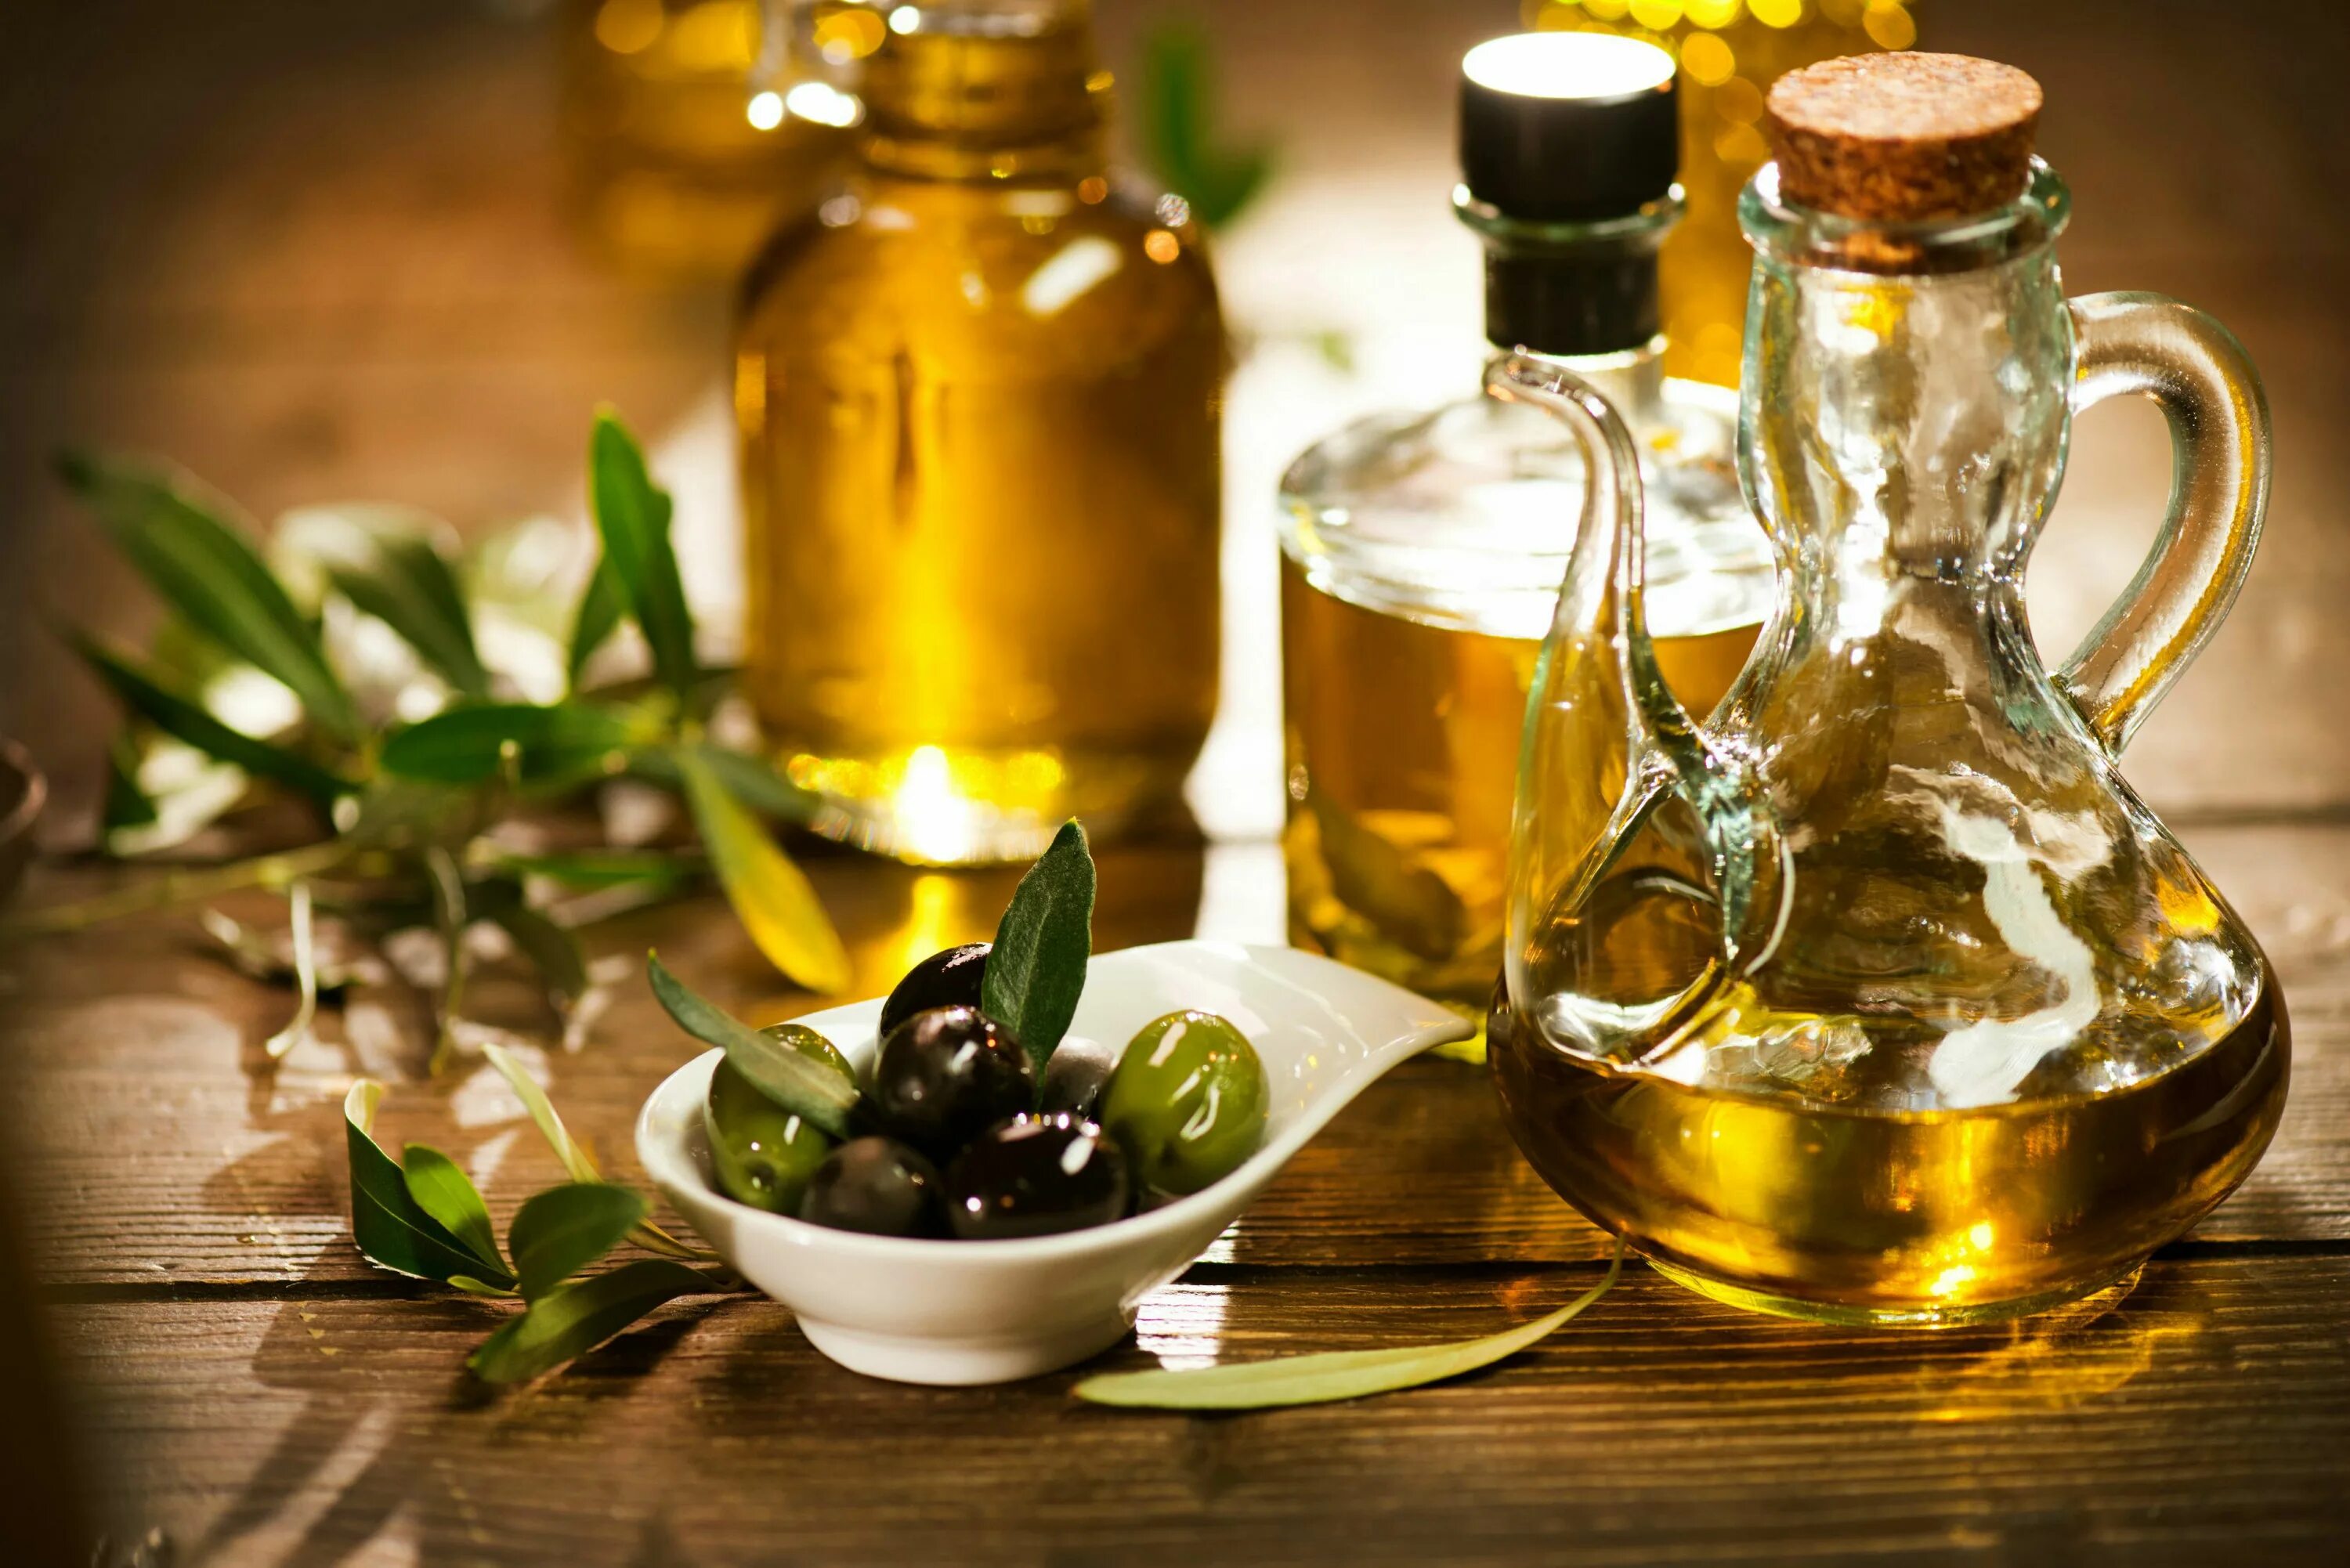 Olive Oil масло оливковое. Олив Ойл масло оливковое. Масло растительное с оливковым. Оливки и оливковое масло. Подсолнечное масло для здоровья